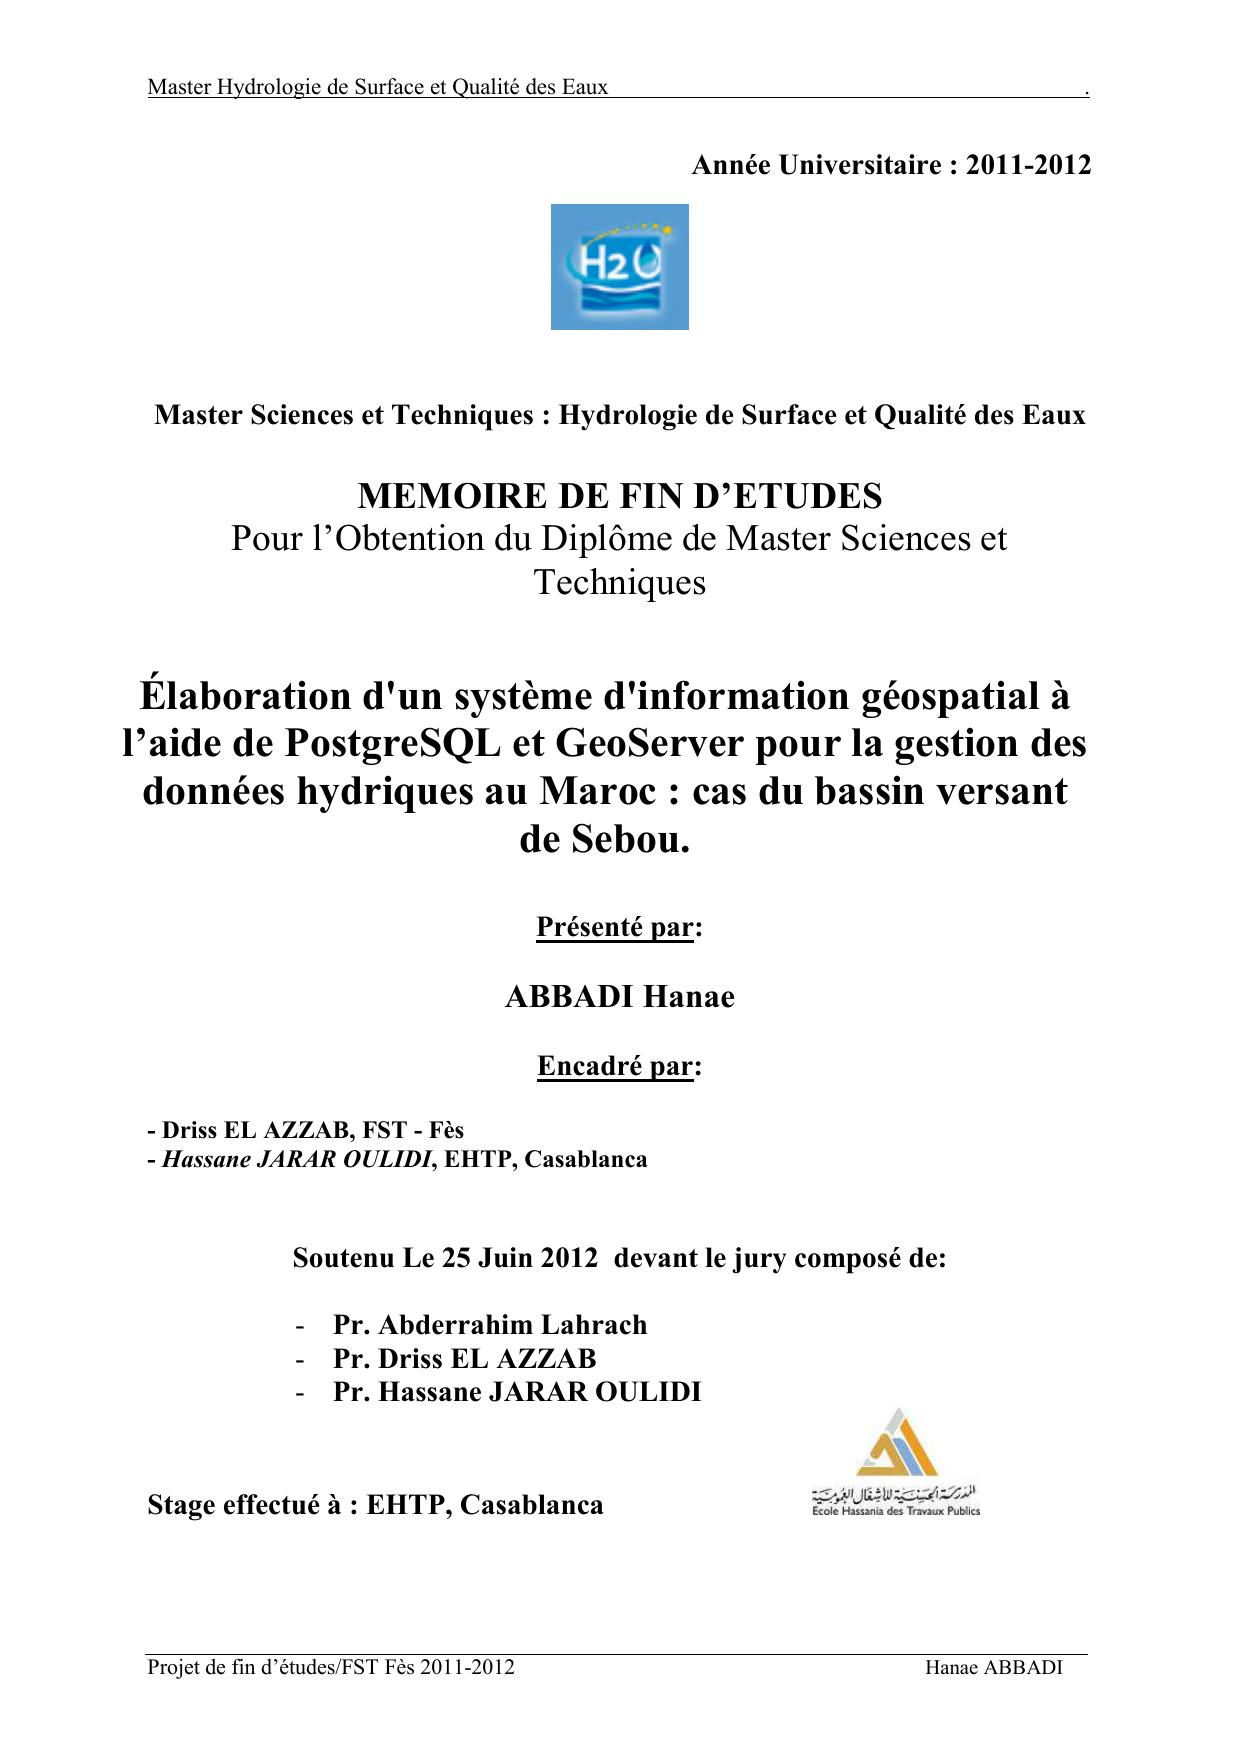 Élaboration d'un système d'information géospatial à l’aide de PostgreSQL et GeoServer pour la gestion des données hydriques au Maroc : cas du bassin versant de Sebou